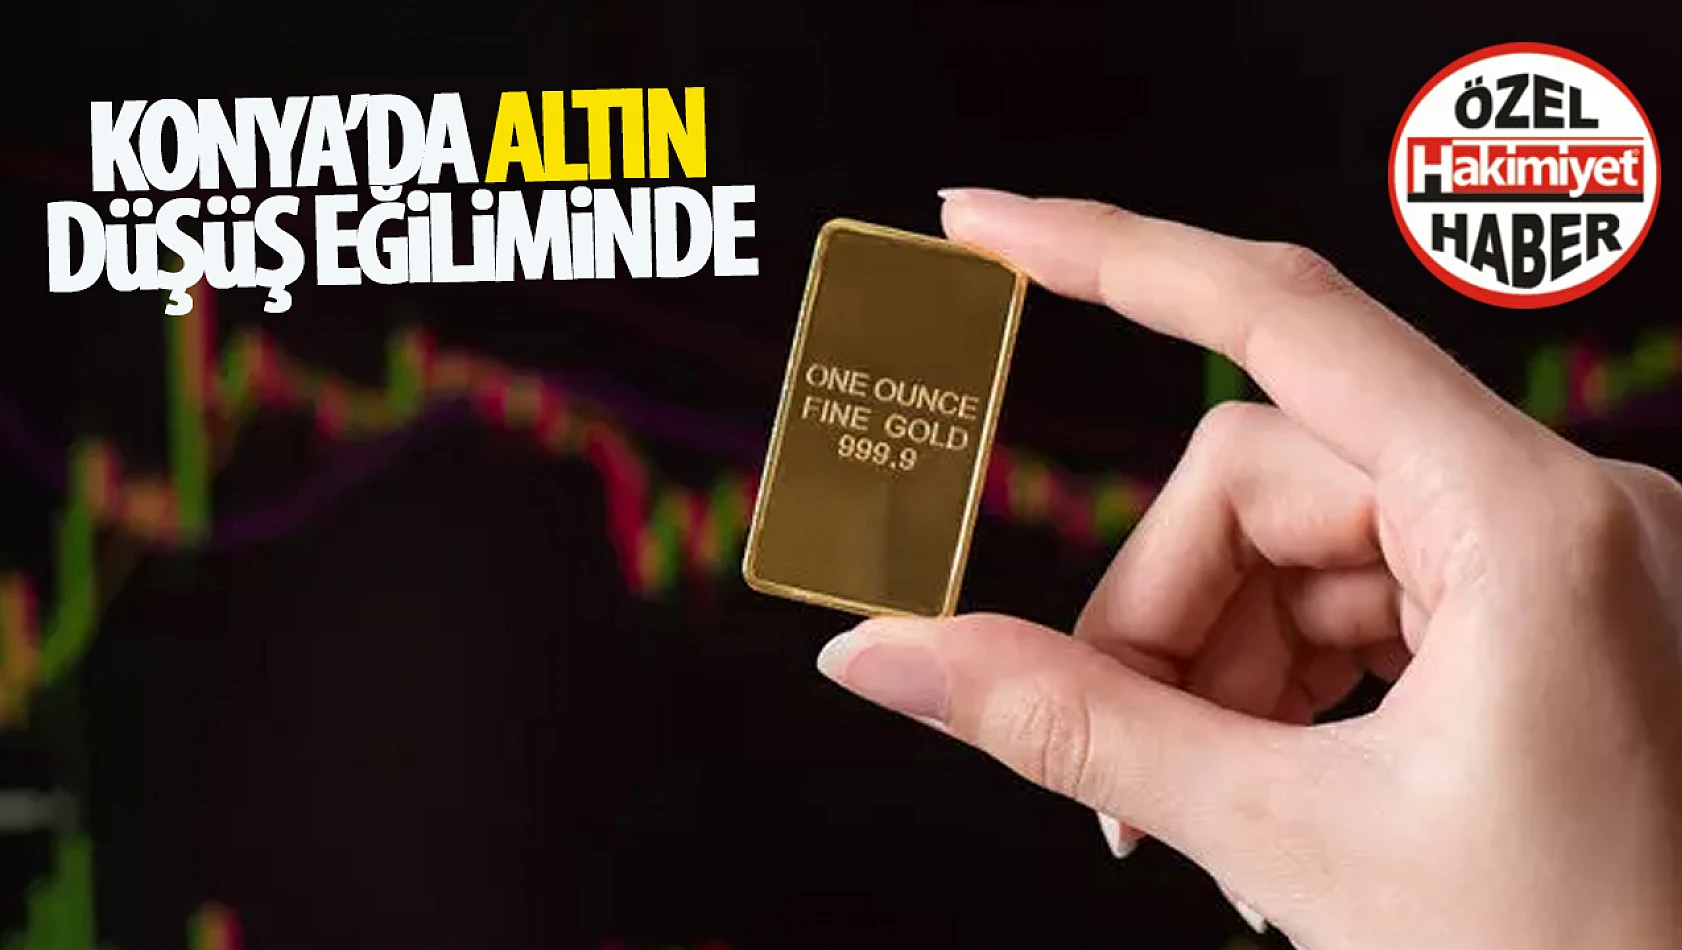 Konya'da Altın Fiyatları Düşüş Eğiliminde